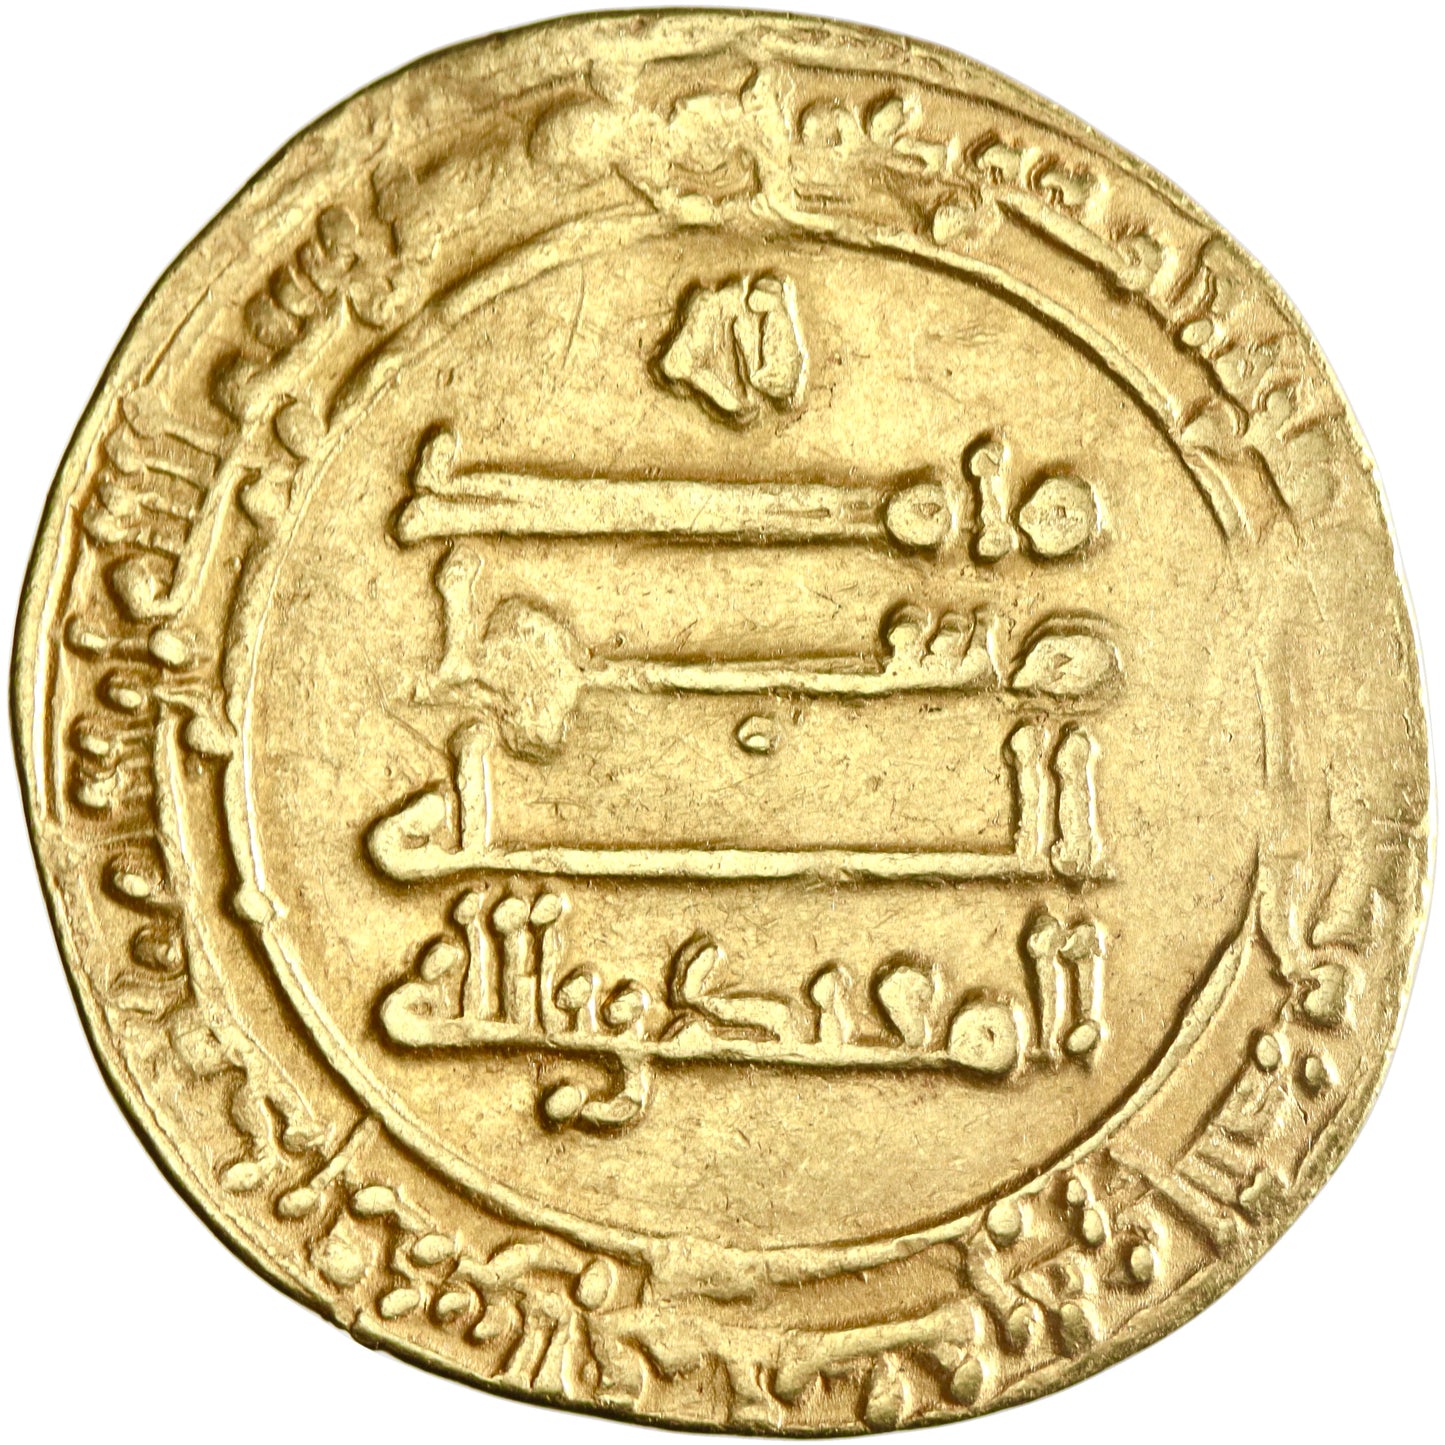 Abbasid, al-Muqtadir, gold dinar, al-Ahwaz mint, AH 319, citing Abu al-'Abbas